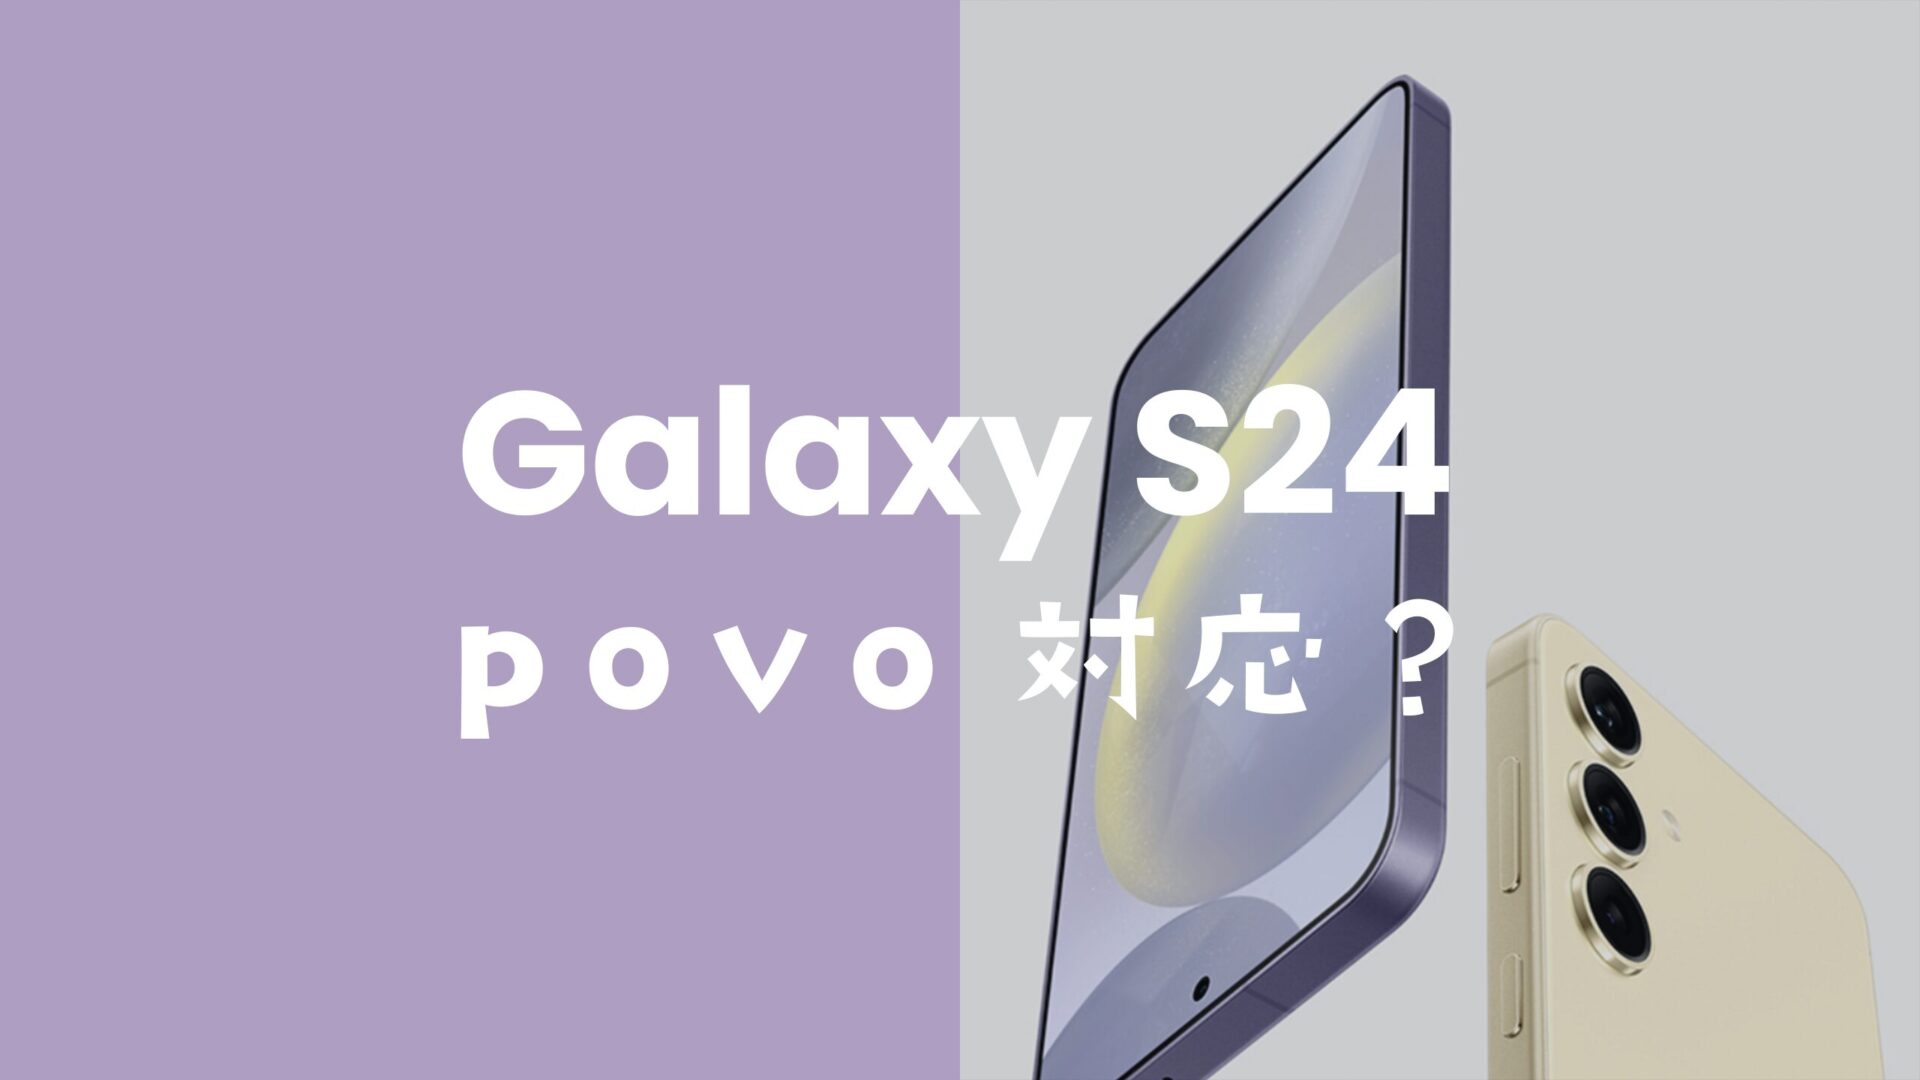 Galaxy S24はpovoで使える対応機種。【ギャラクシーS24】のサムネイル画像